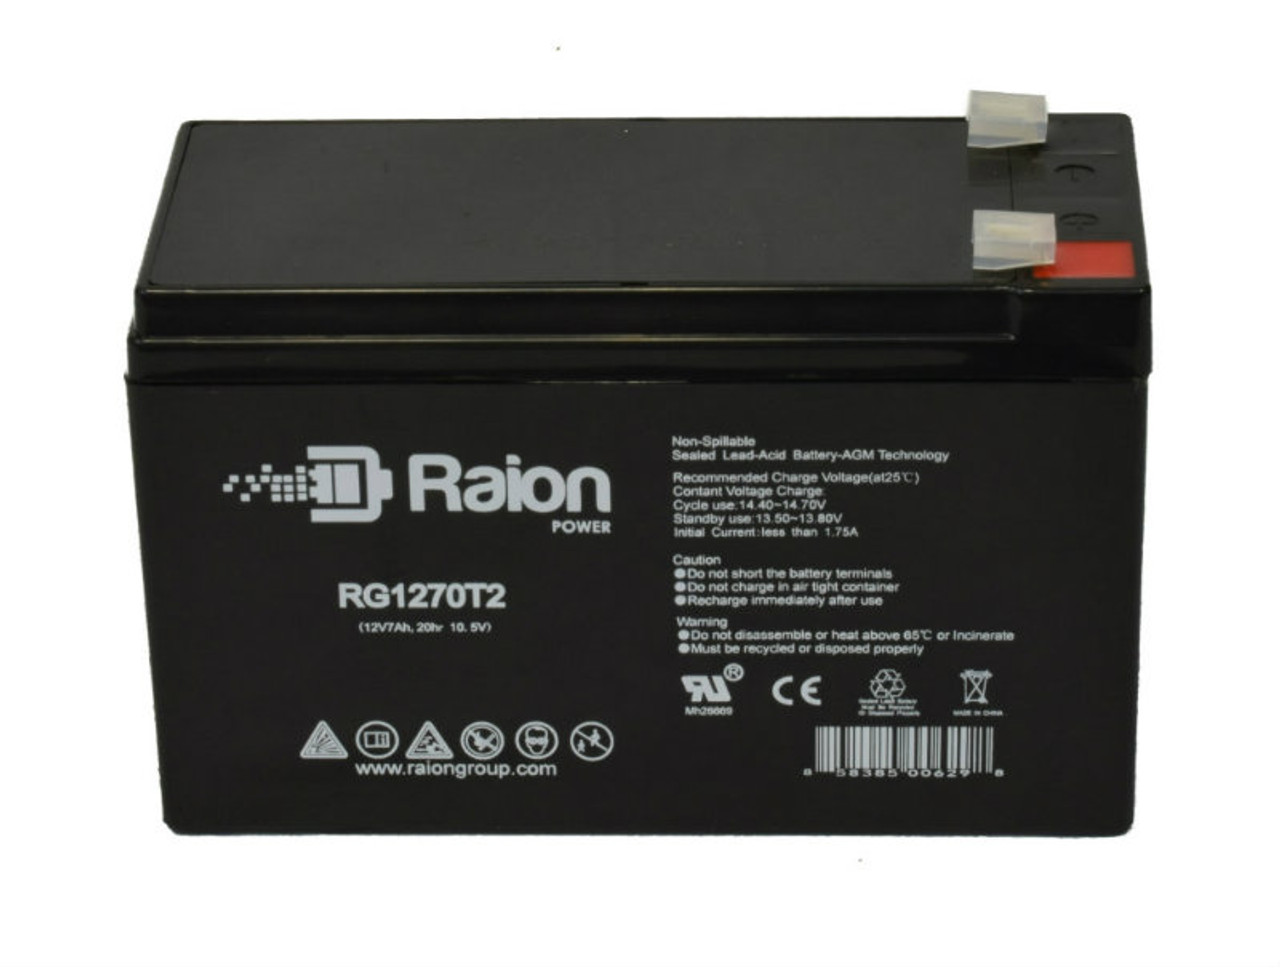 Raion Power RG1270T1 12V 7Ah Lead Acid Battery for Dewalt 371411-00 Lawn Mower